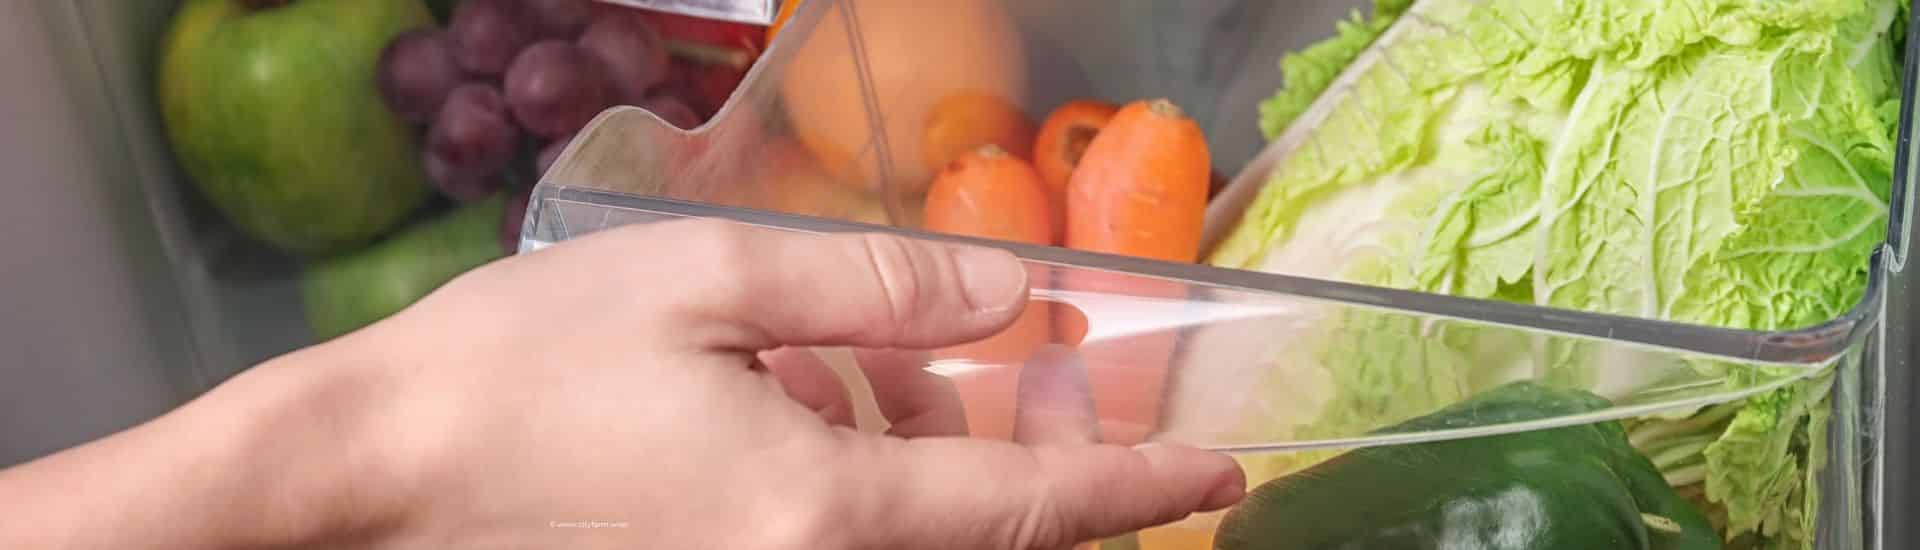 Lebensmittel retten 6 Tipps für die richtige Lagerung von Lebensmitteln - Kühlschrankfach mit Gemüse und Obst